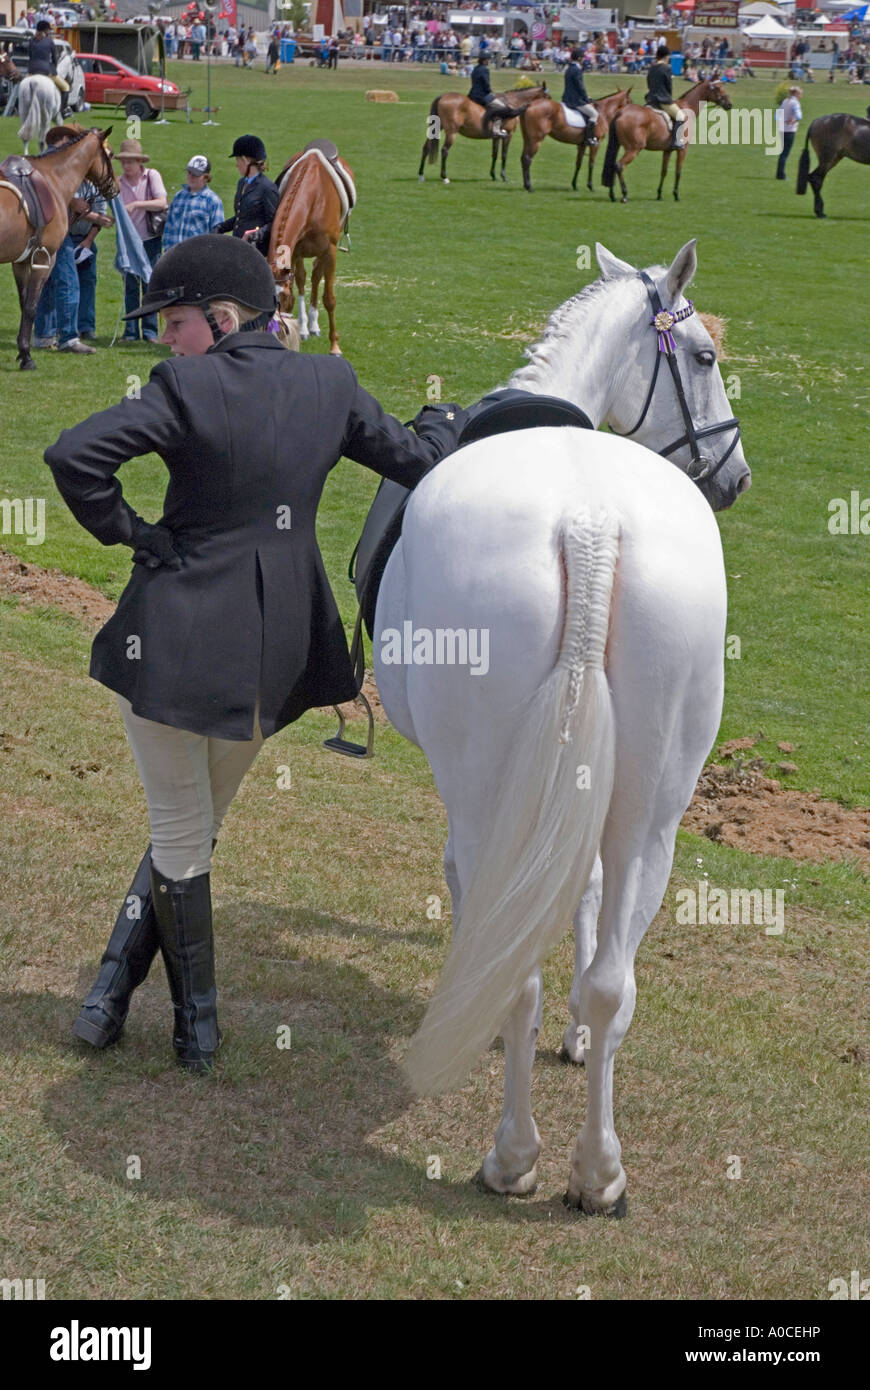 Ein junges Mädchen, stützte sich auf ihr Pferd auf ein Pferdesport-Event bei einer Landwirtschaftsausstellung in Tasmanien Stockfoto